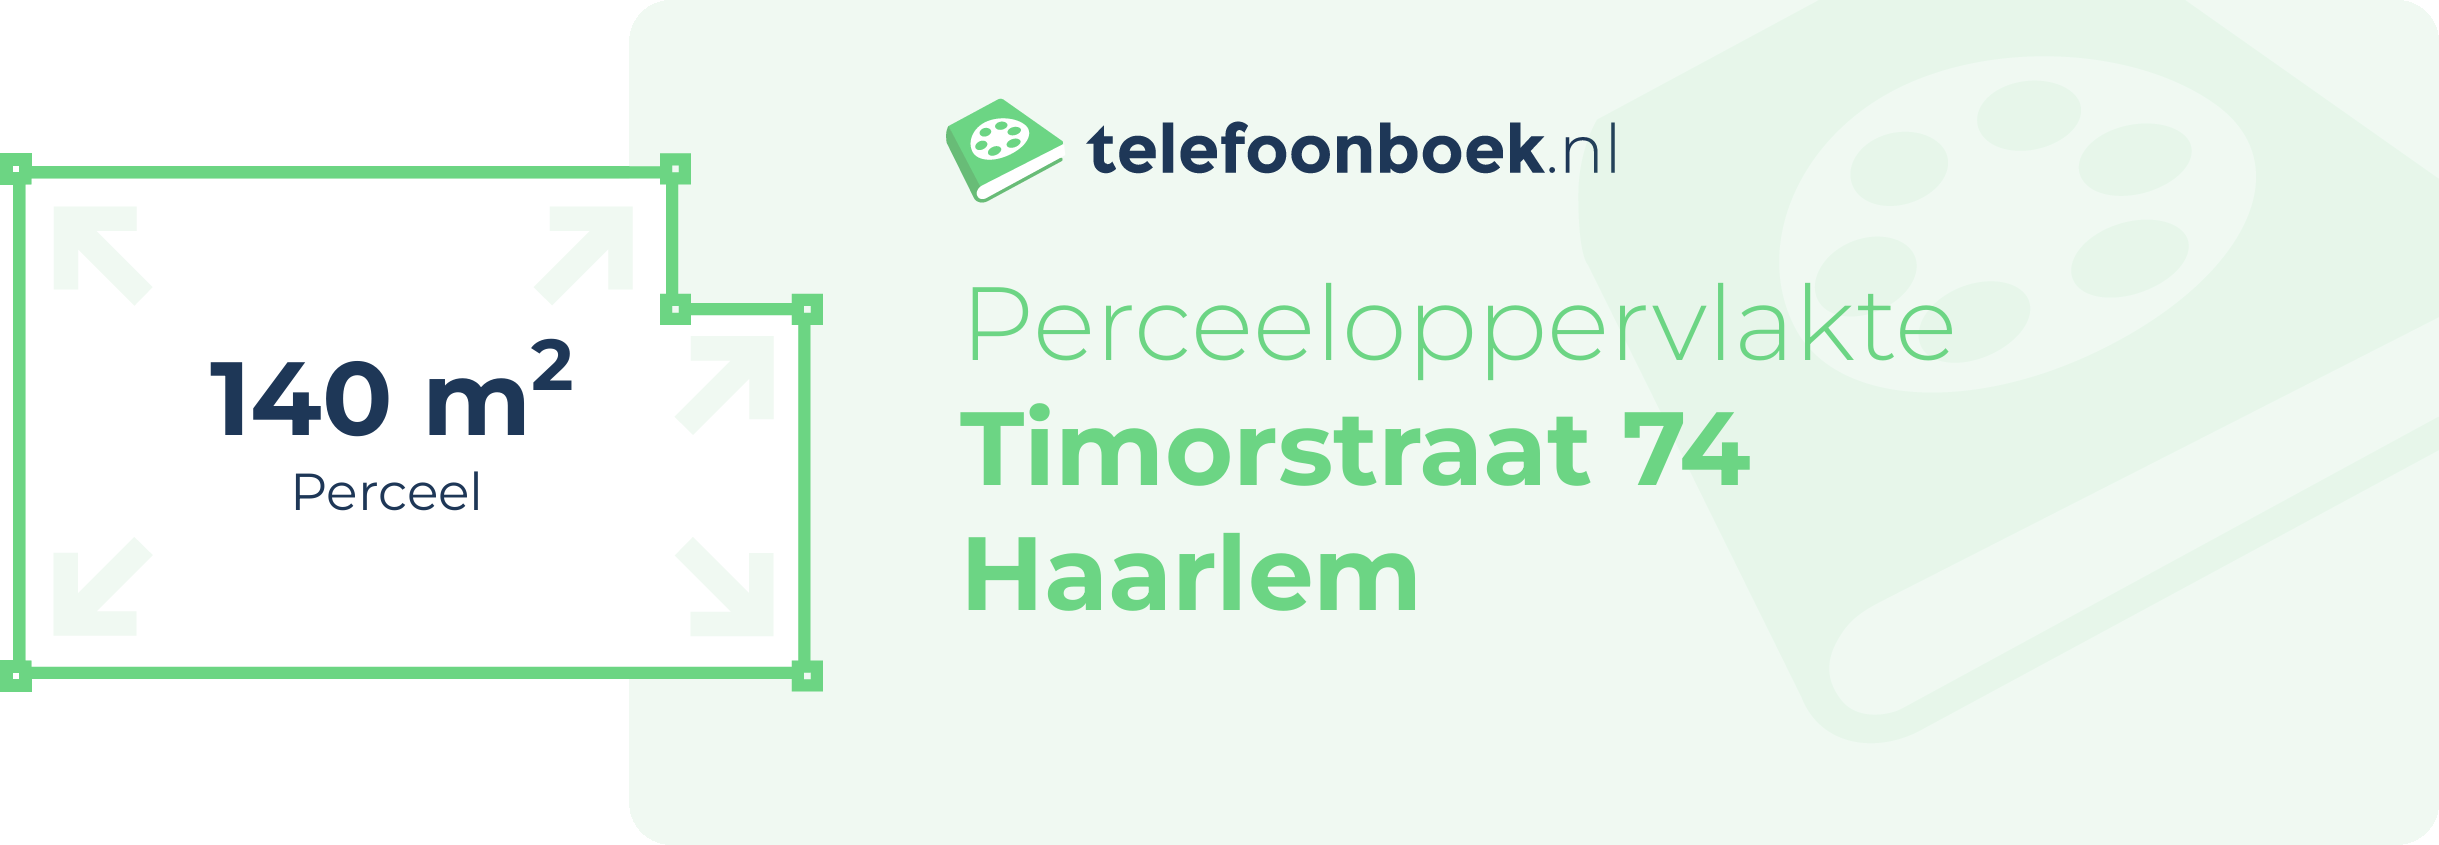 Perceeloppervlakte Timorstraat 74 Haarlem